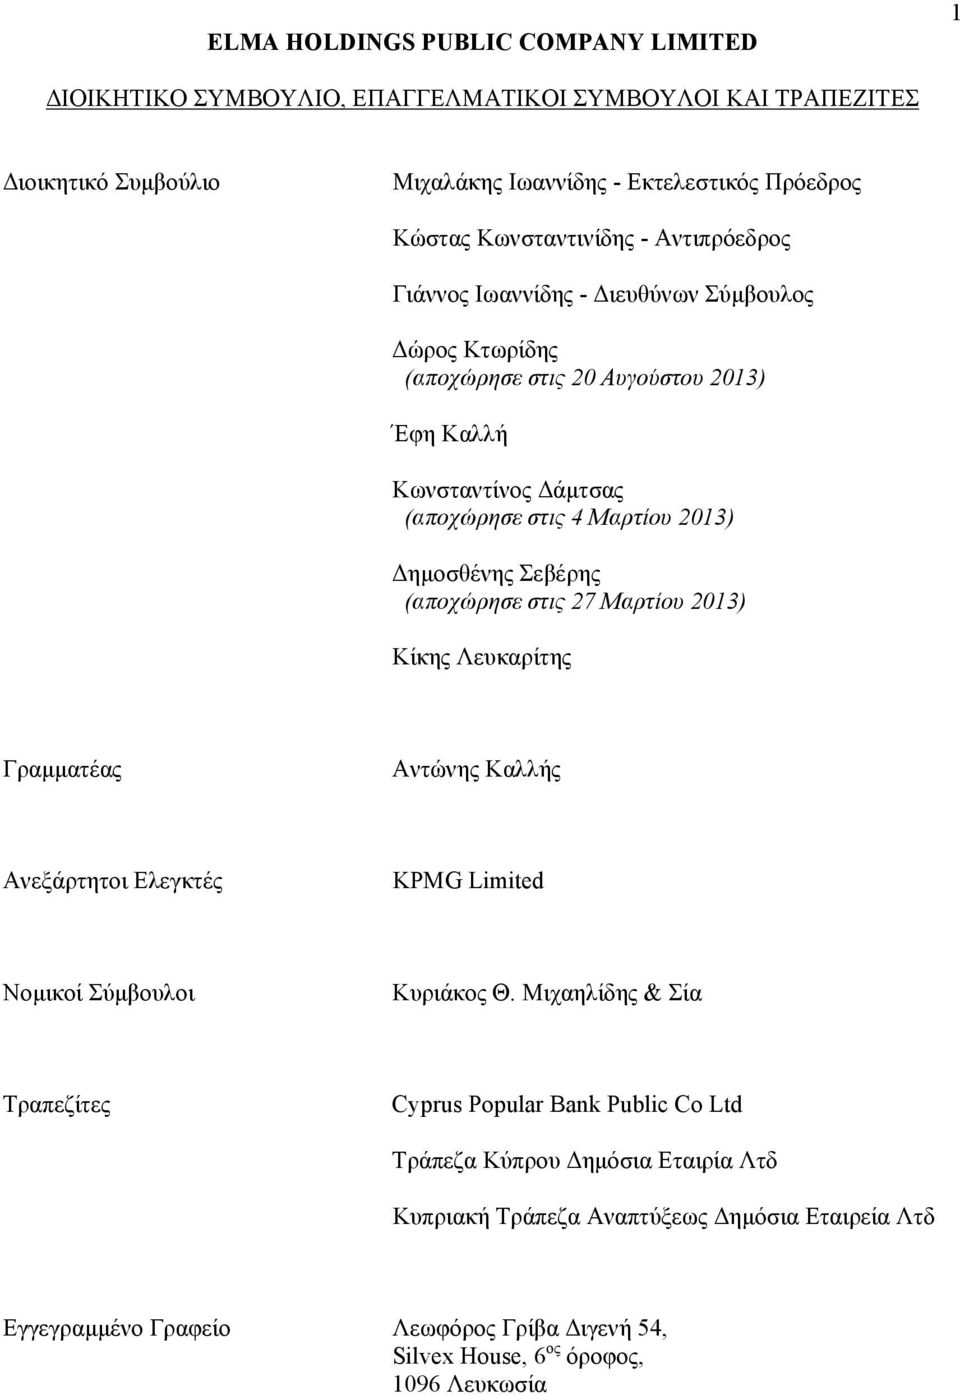 στις 27 Μαρτίου 2013) Κίκης Λευκαρίτης Γραμματέας Αντώνης Καλλής Ανεξάρτητοι Ελεγκτές KPMG Limited Νομικοί Σύμβουλοι Κυριάκος Θ.